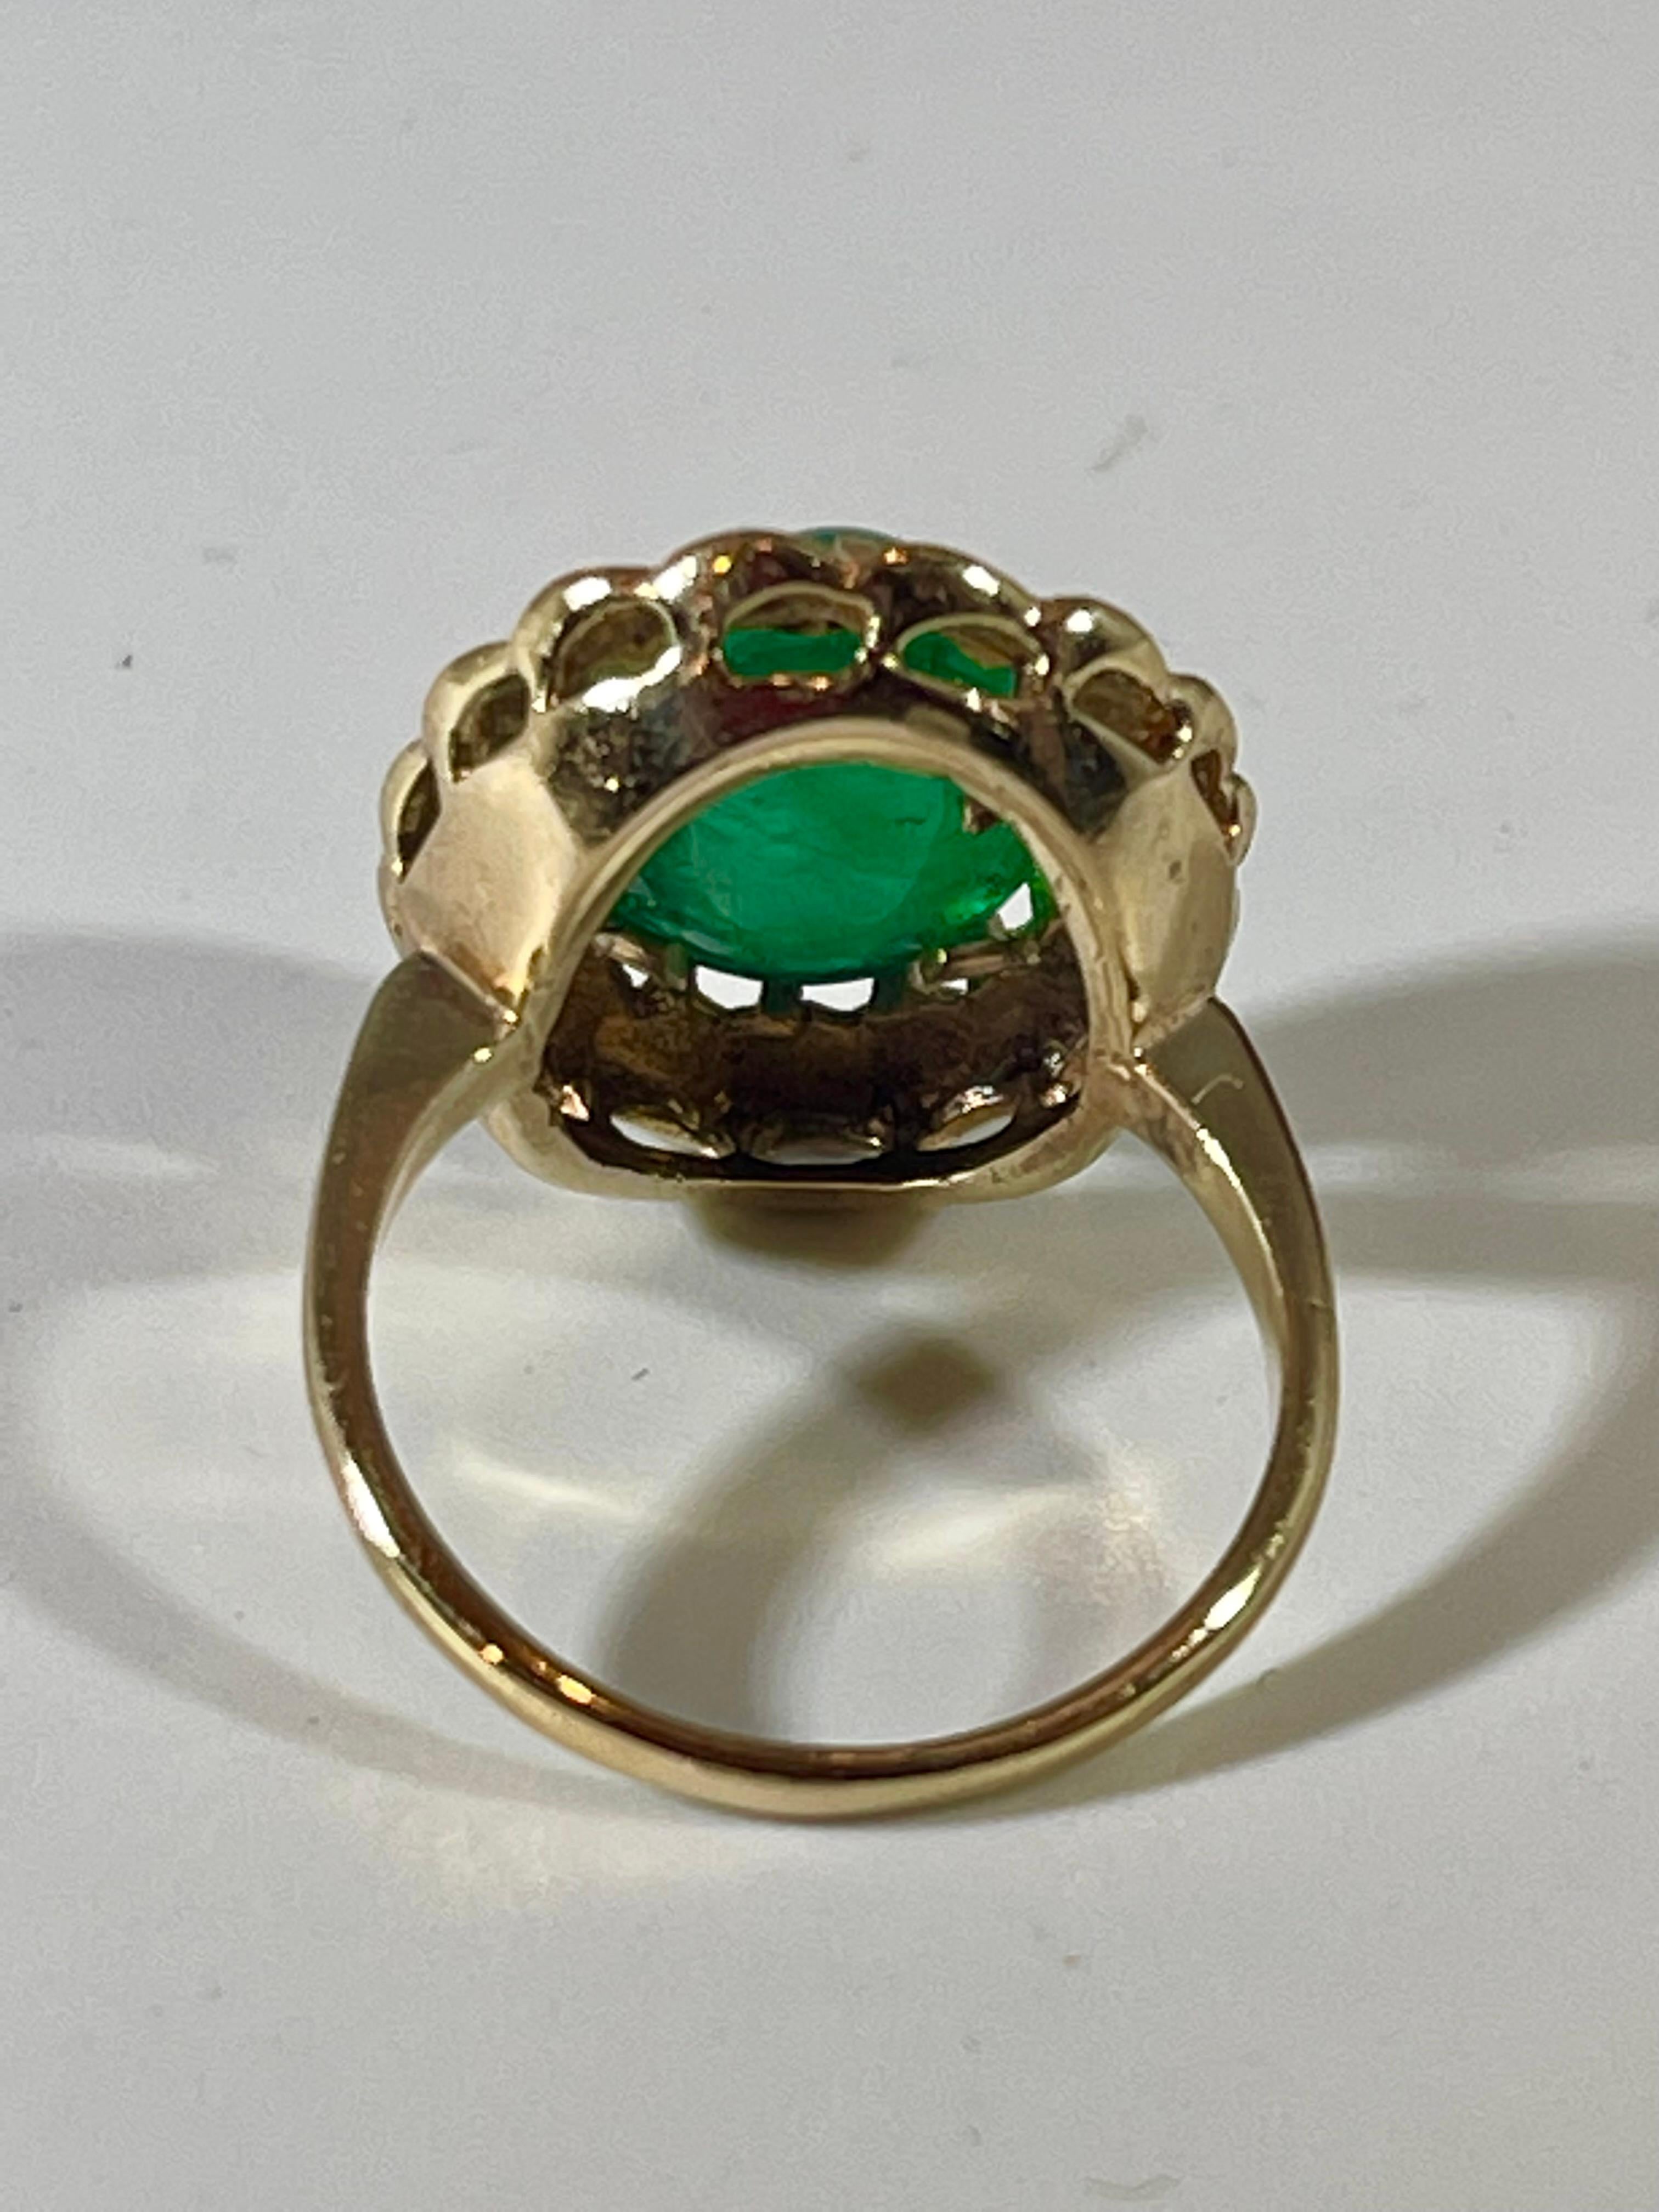 4.5 Carat Natural Emerald Cut Emerald Ring 14 Karat Yellow Gold 3